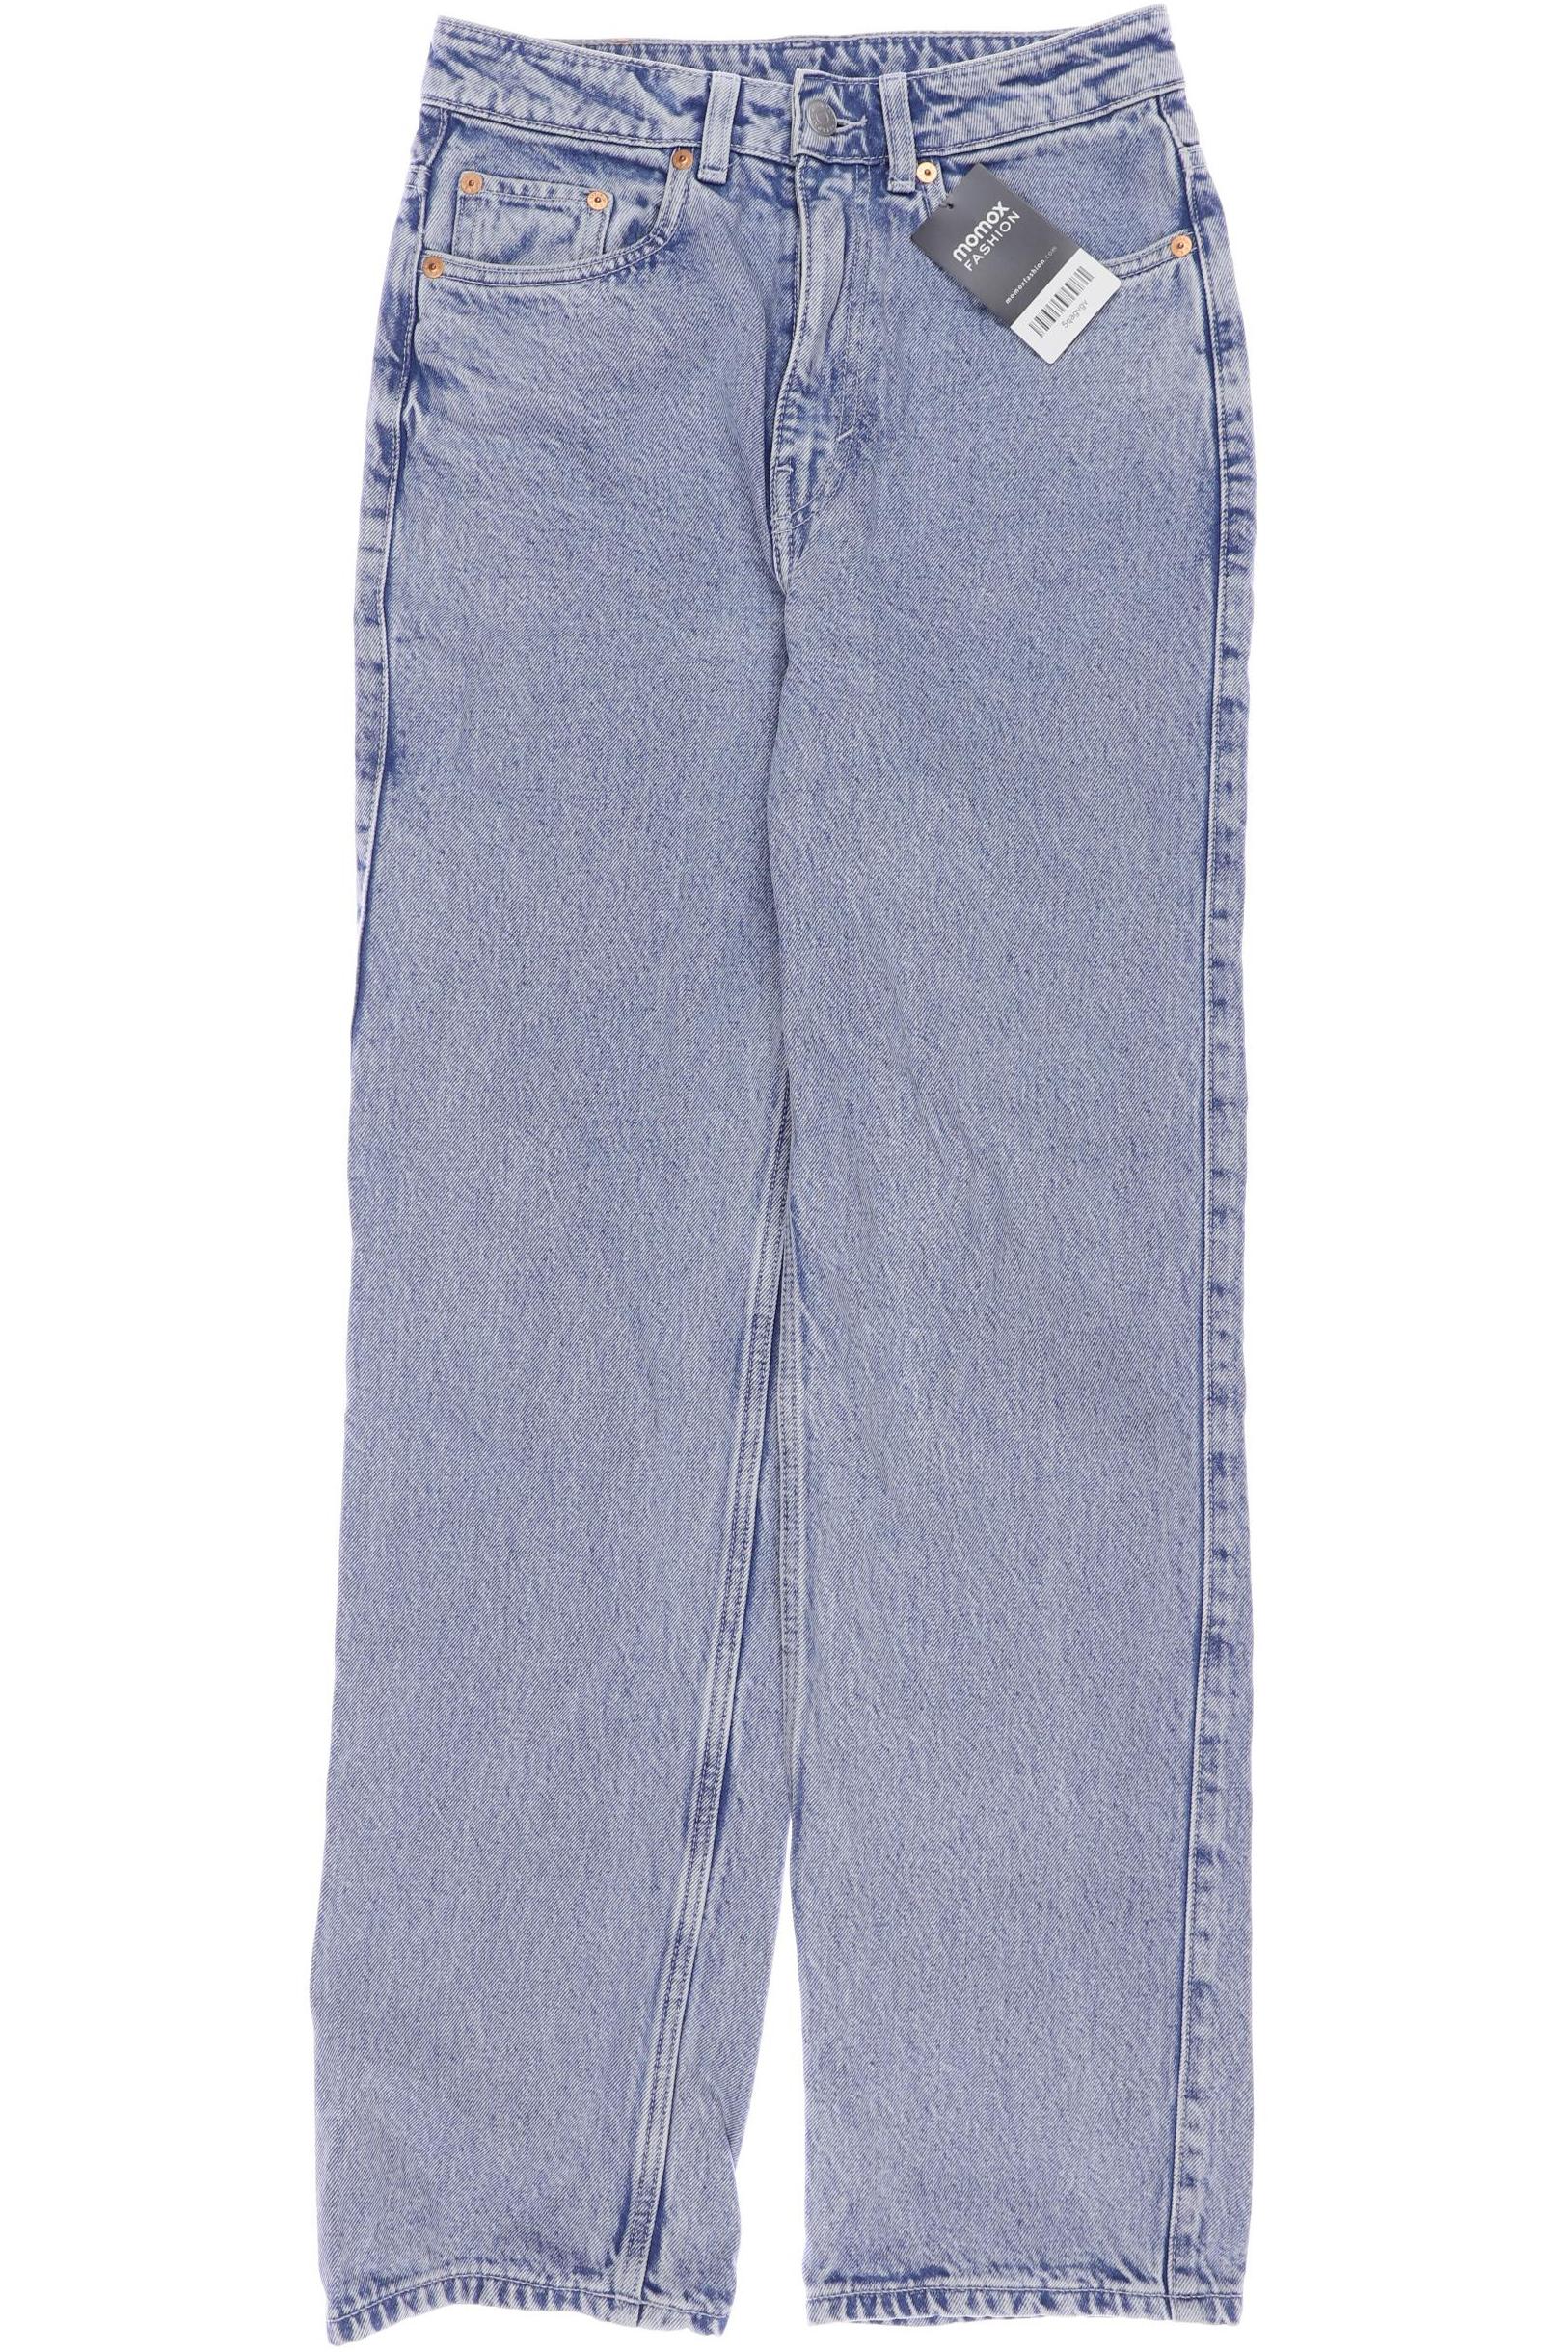 Weekday Damen Jeans, blau, Gr. 36 von Weekday